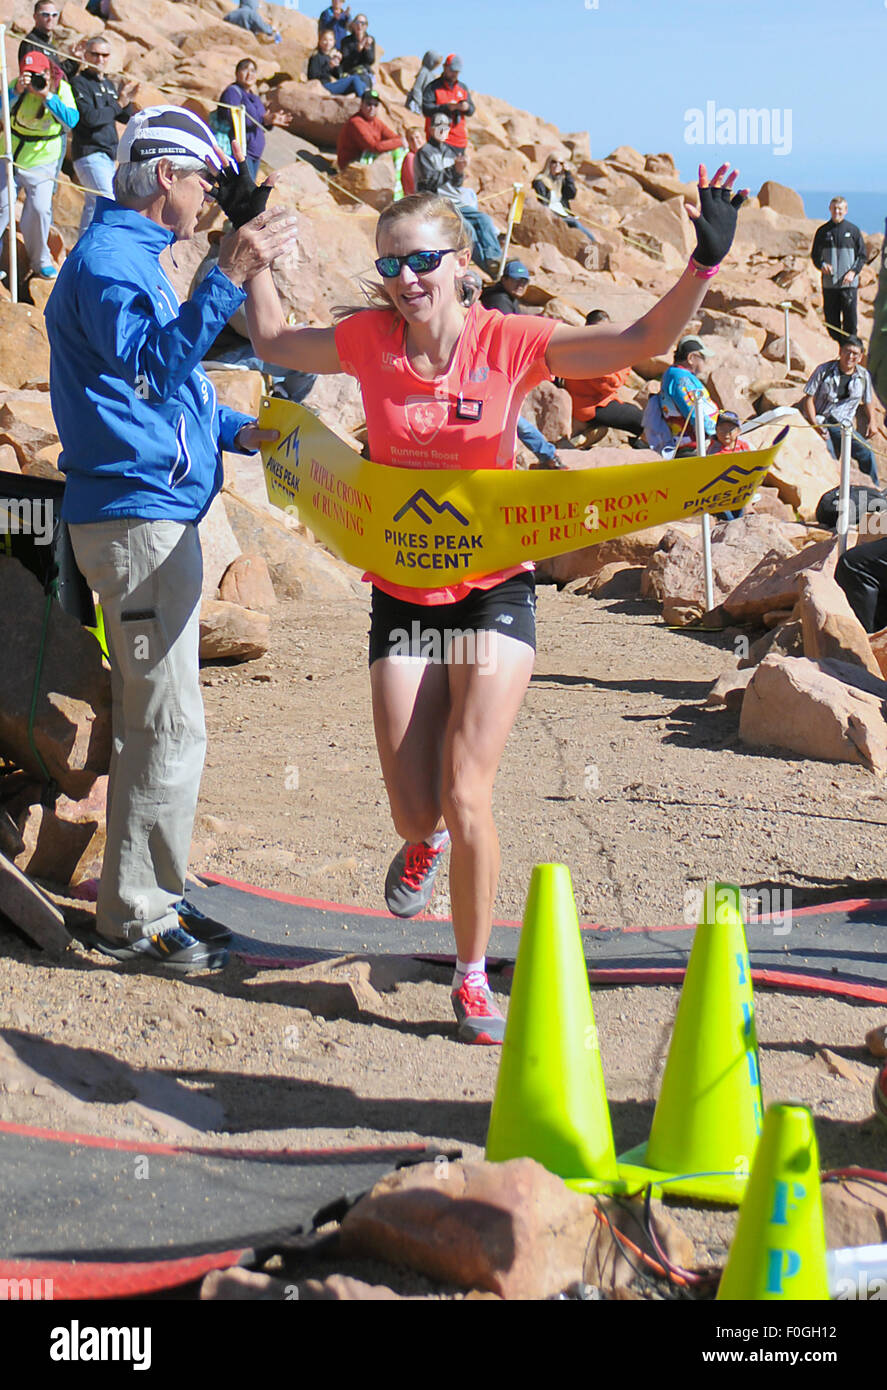 Manitou Springs, Colorado, Estados Unidos. 15 Aug, 2015. Eagle, Colorado  runner, Kim Dobson, cruza la línea de meta para ganar la carrera de la mujer  en el Ascenso de Pikes Peak durante